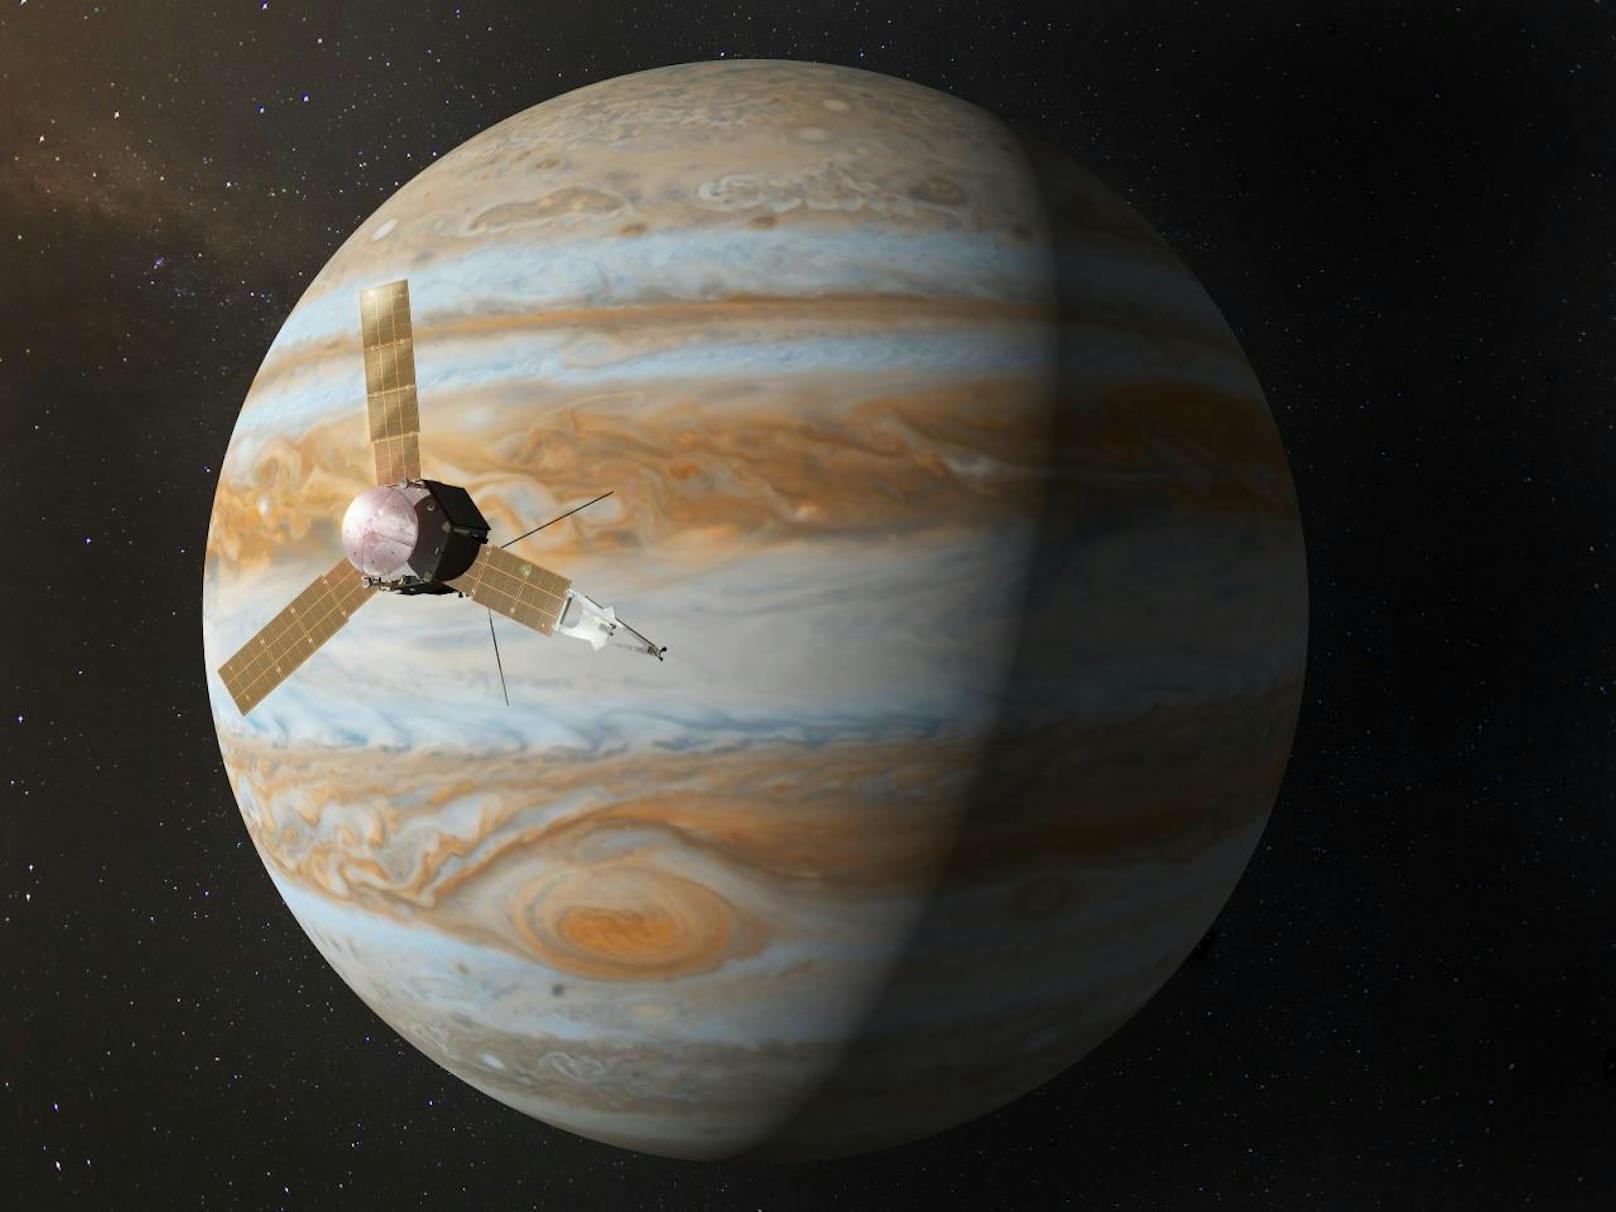 Nach fast fünfjähriger Reise durch das Sonnensystem ist die unbemannte NASA-Sonde "Juno" im Juli 2016 beim Jupiter angekommen.